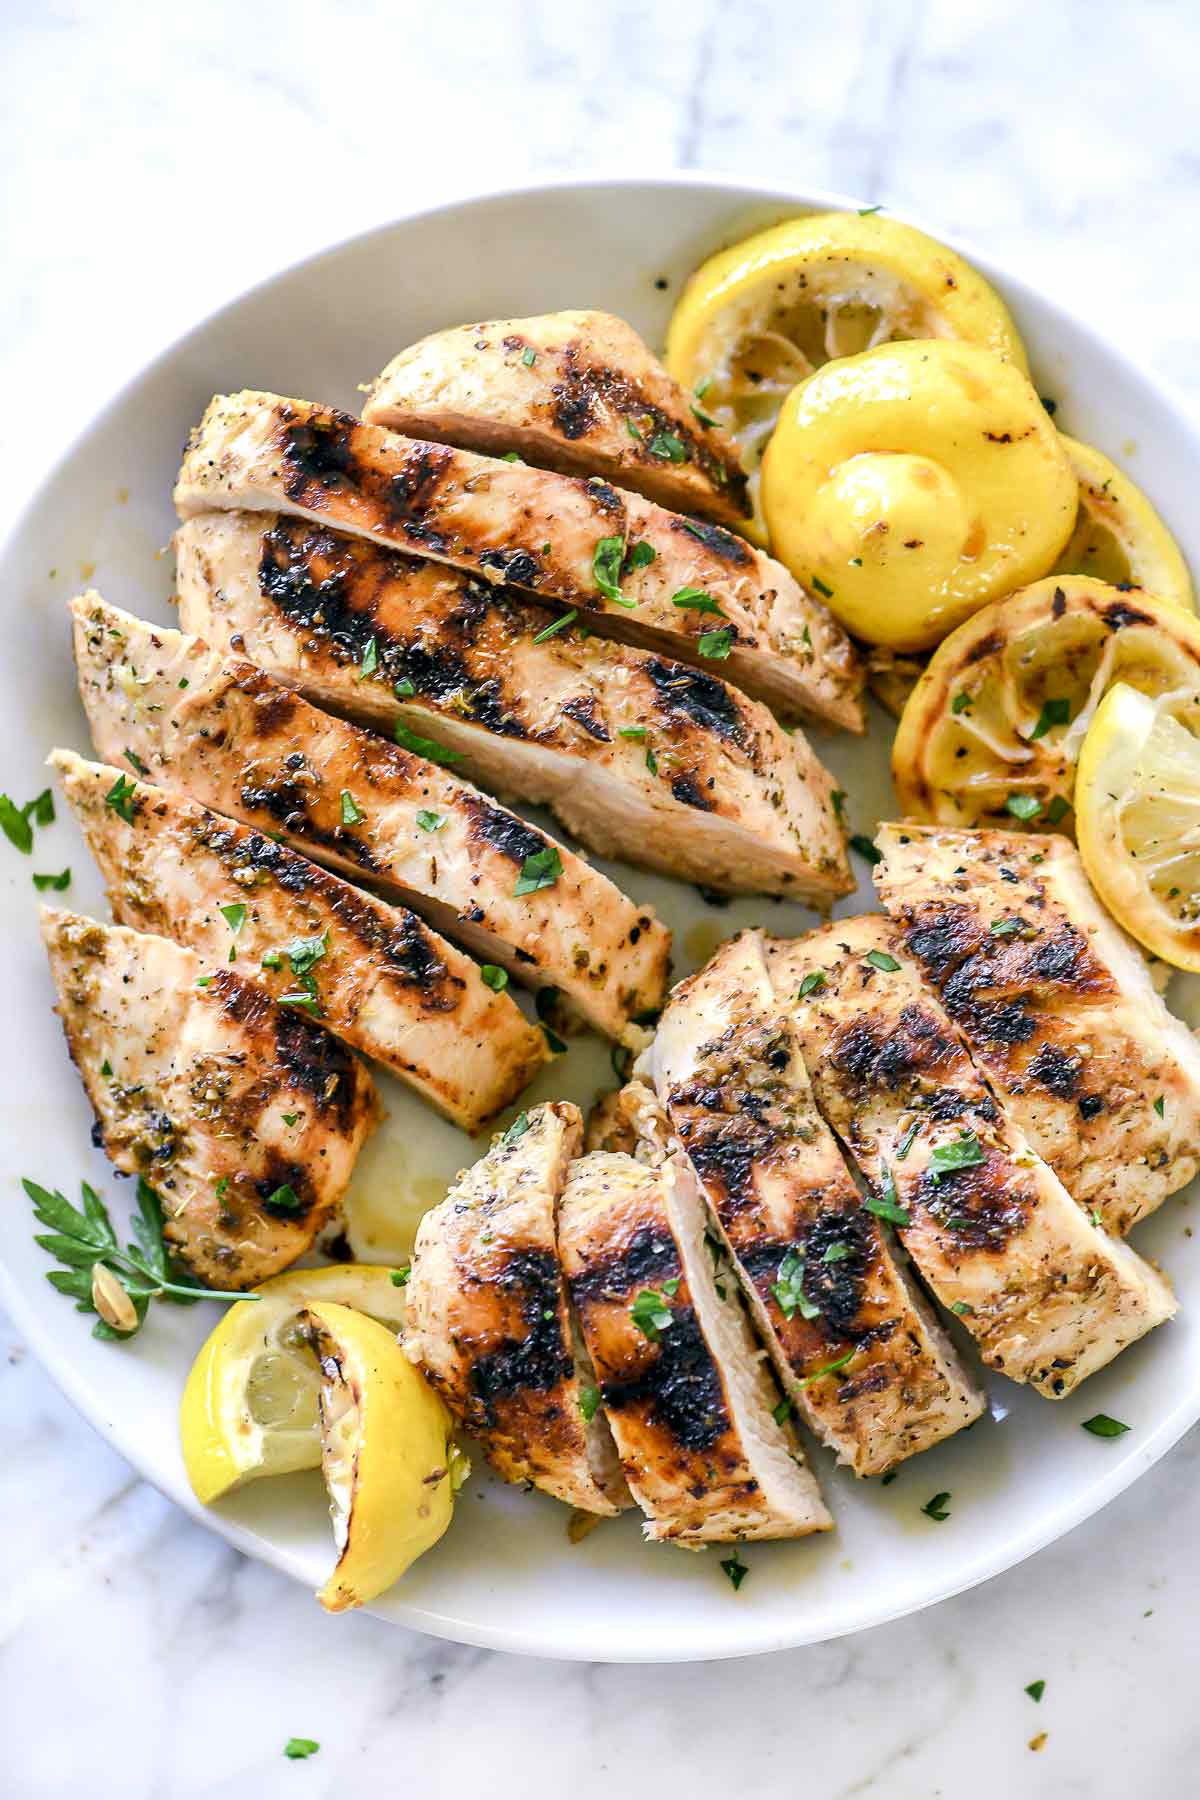 Recette de la marinade pour poulet grillé à la grecque | foodiecrush.com #poulet #marinade #citron #grecque